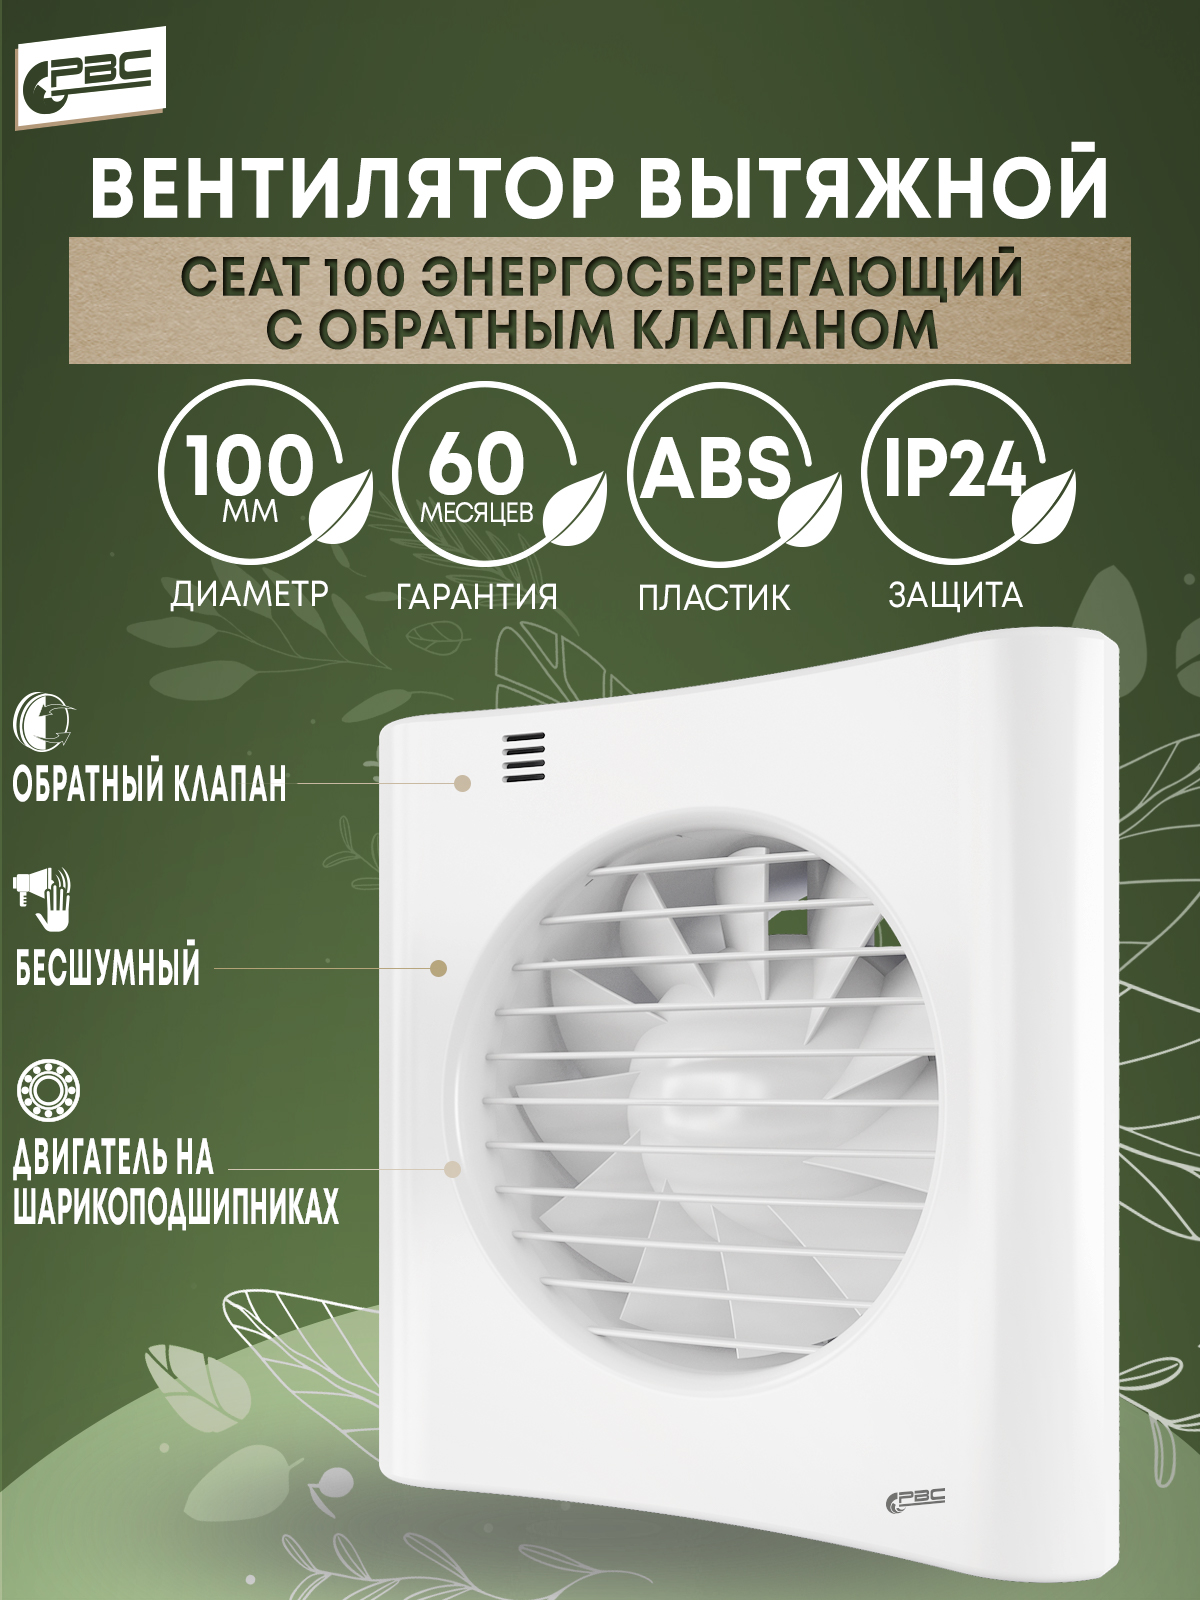 Вентилятор вытяжной бесшумный Сеат 100 8 Вт 24 дБ 92 м3/ч с обратным клапаном вентилятор вытяжной era disc 4 bb белый 100 мм для ванной санузла кухни